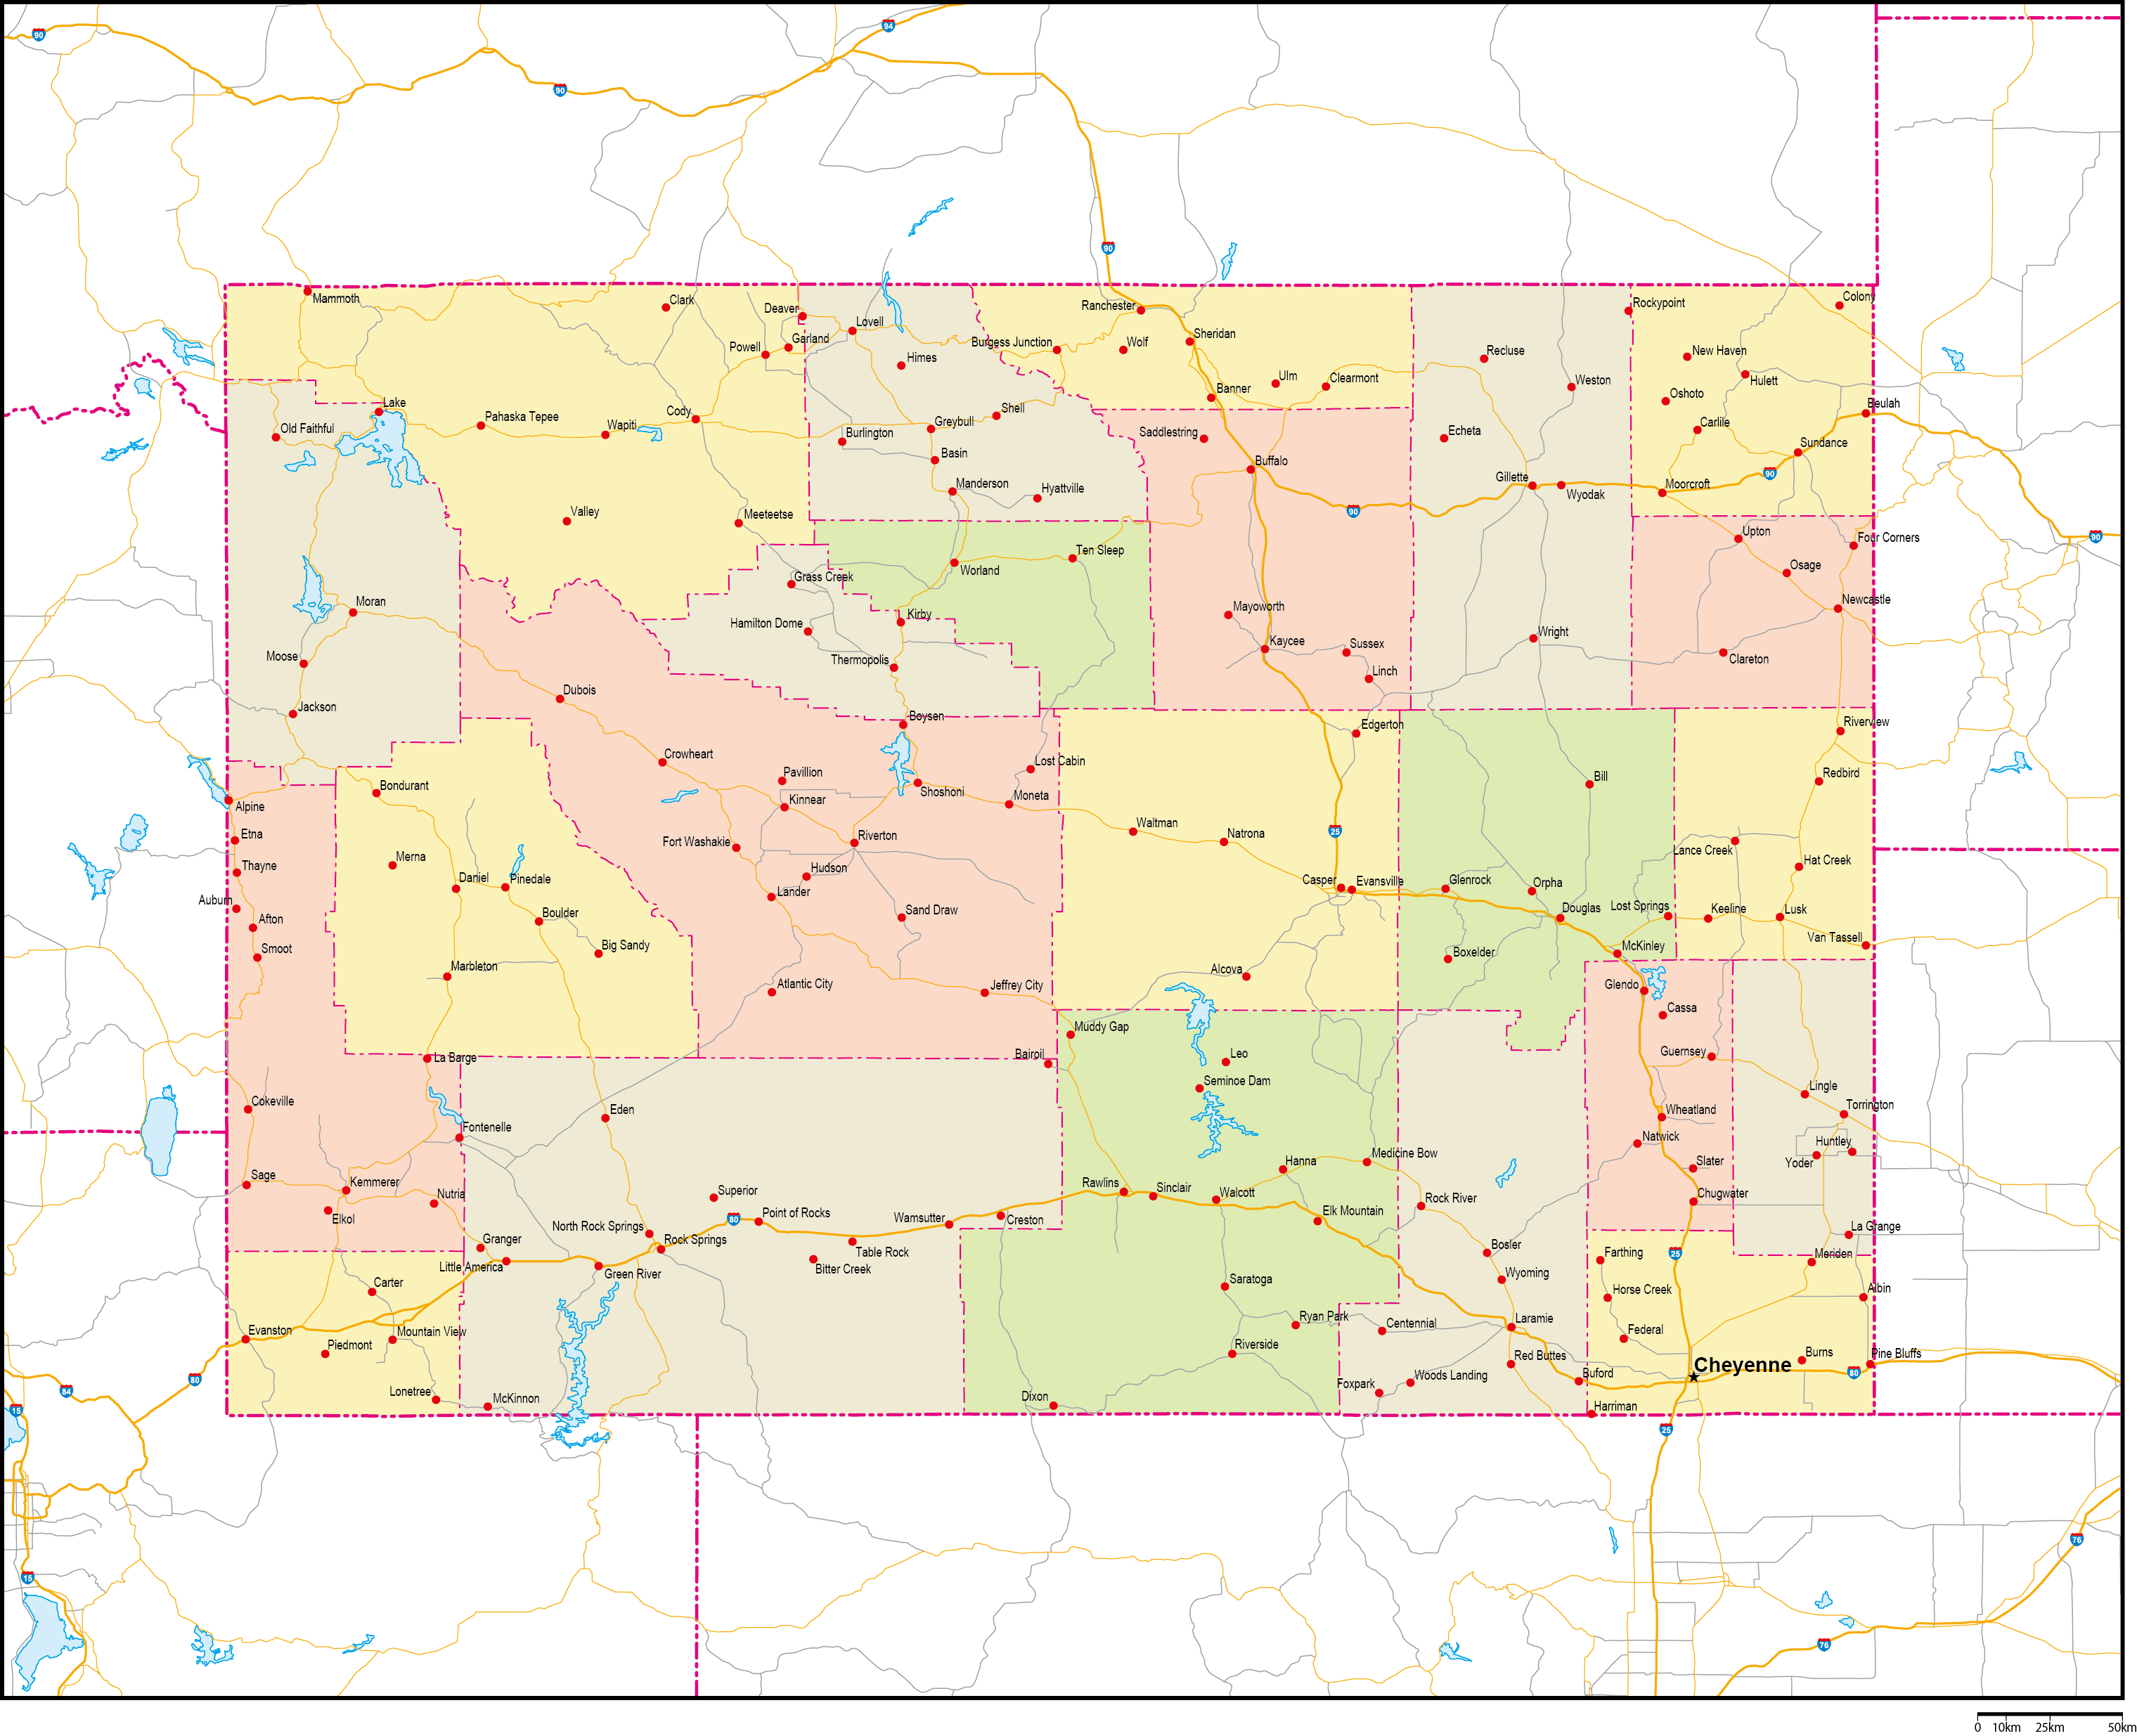 ワイオミング州郡色分け地図州都・主な都市・道路あり(英語)フリーデータの画像